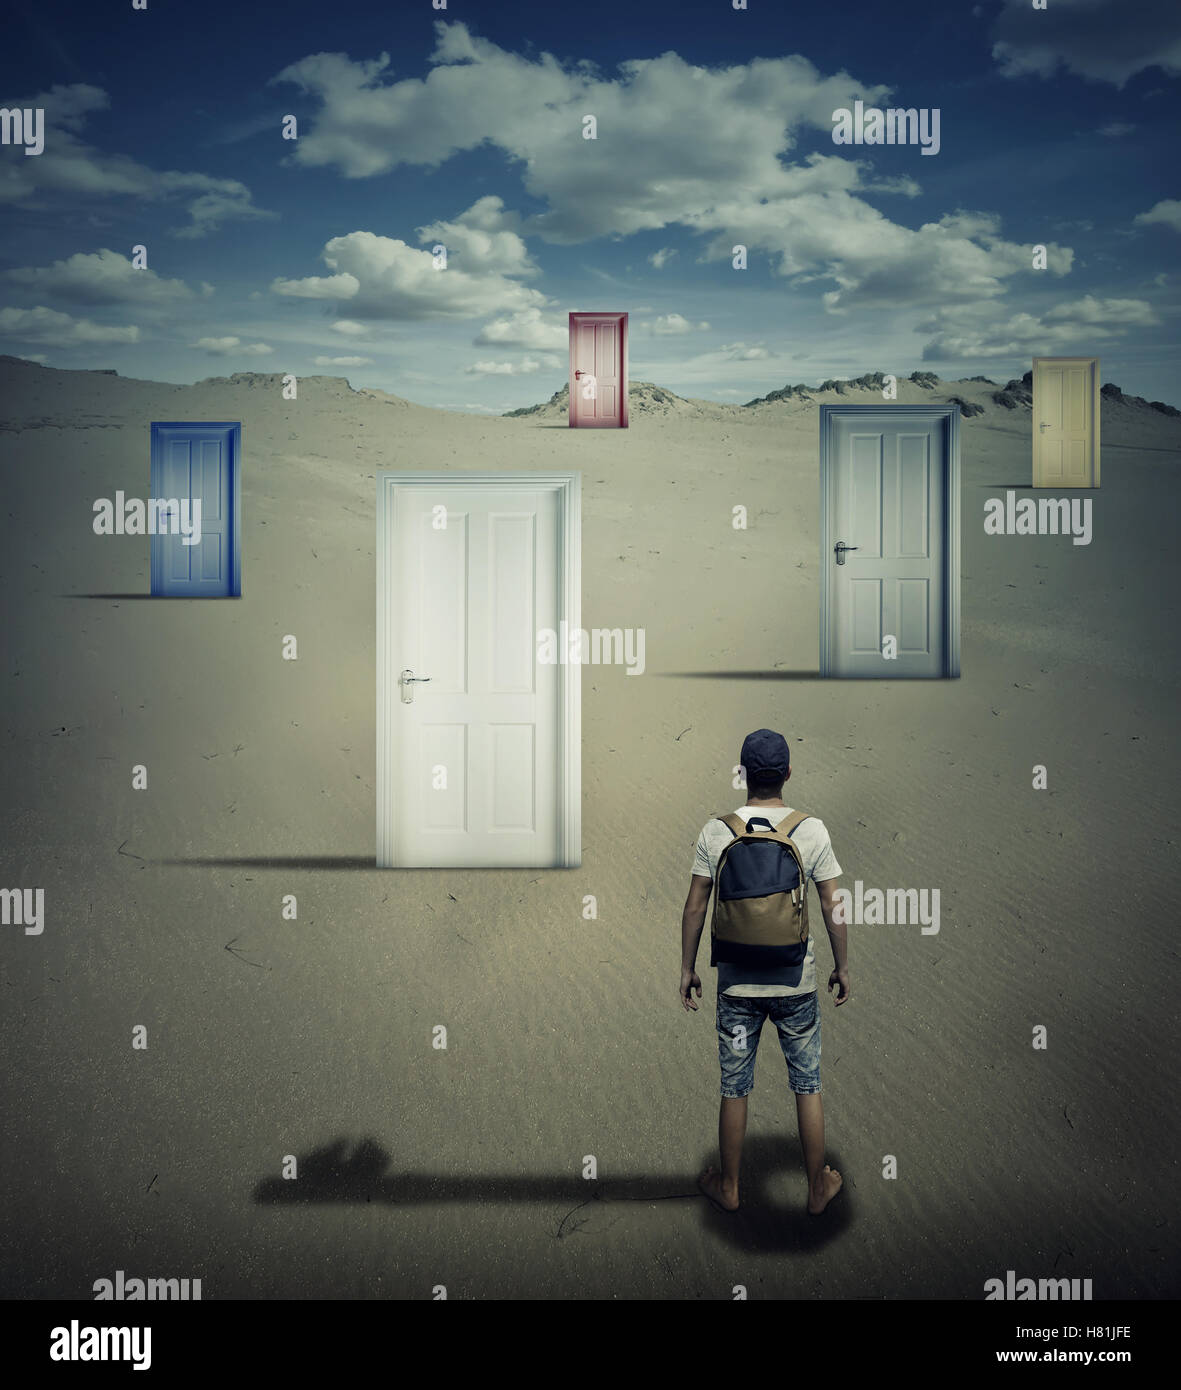 Immagine concettuale con una persona in piedi di fronte a diverse porte chiuse, la caduta di una chiave shadow, a scelta di cui uno per aprire. Foto Stock